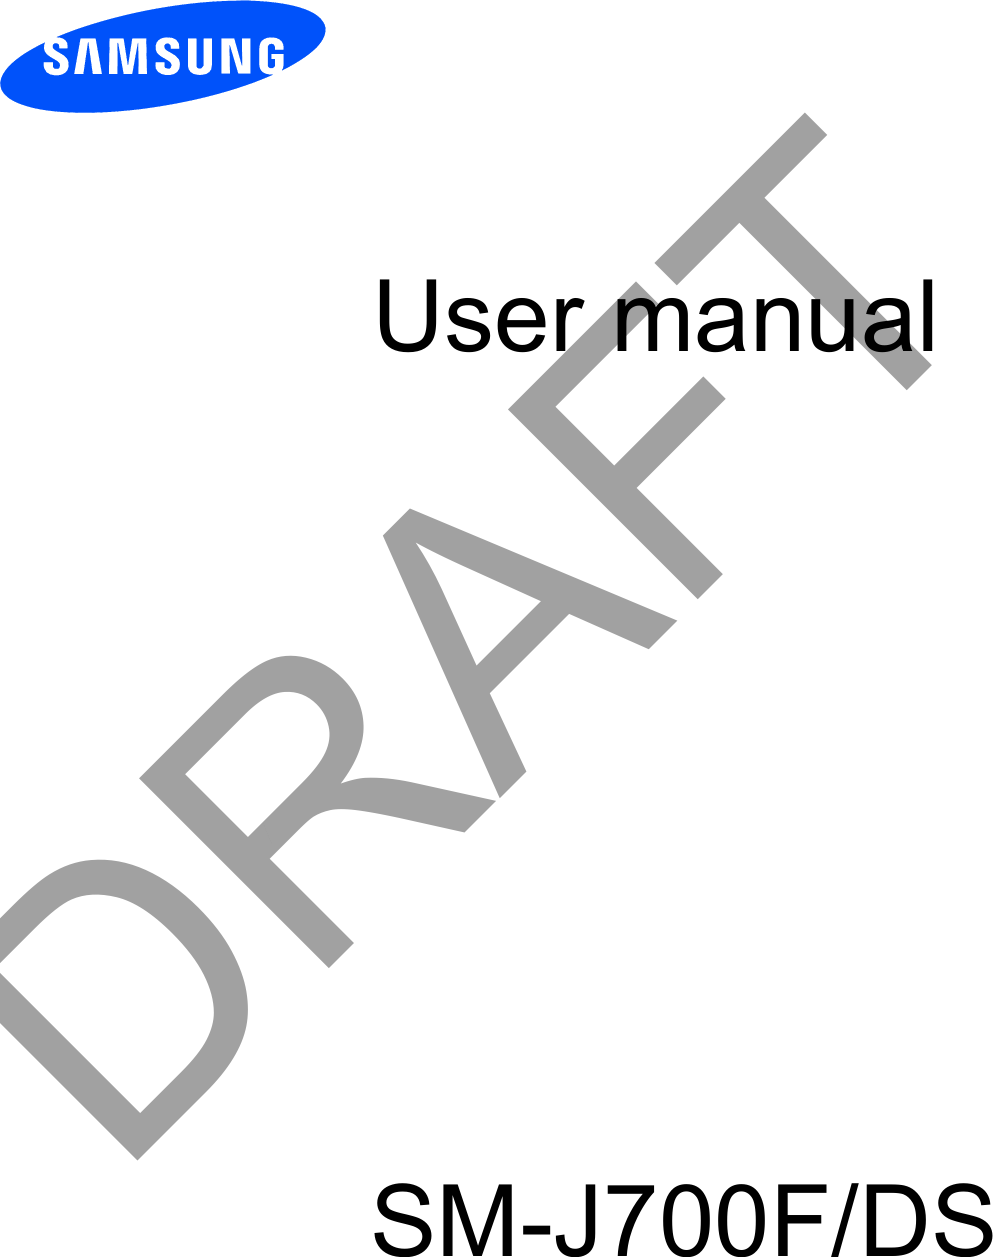 User manualSM-J700F/DSDRAFT